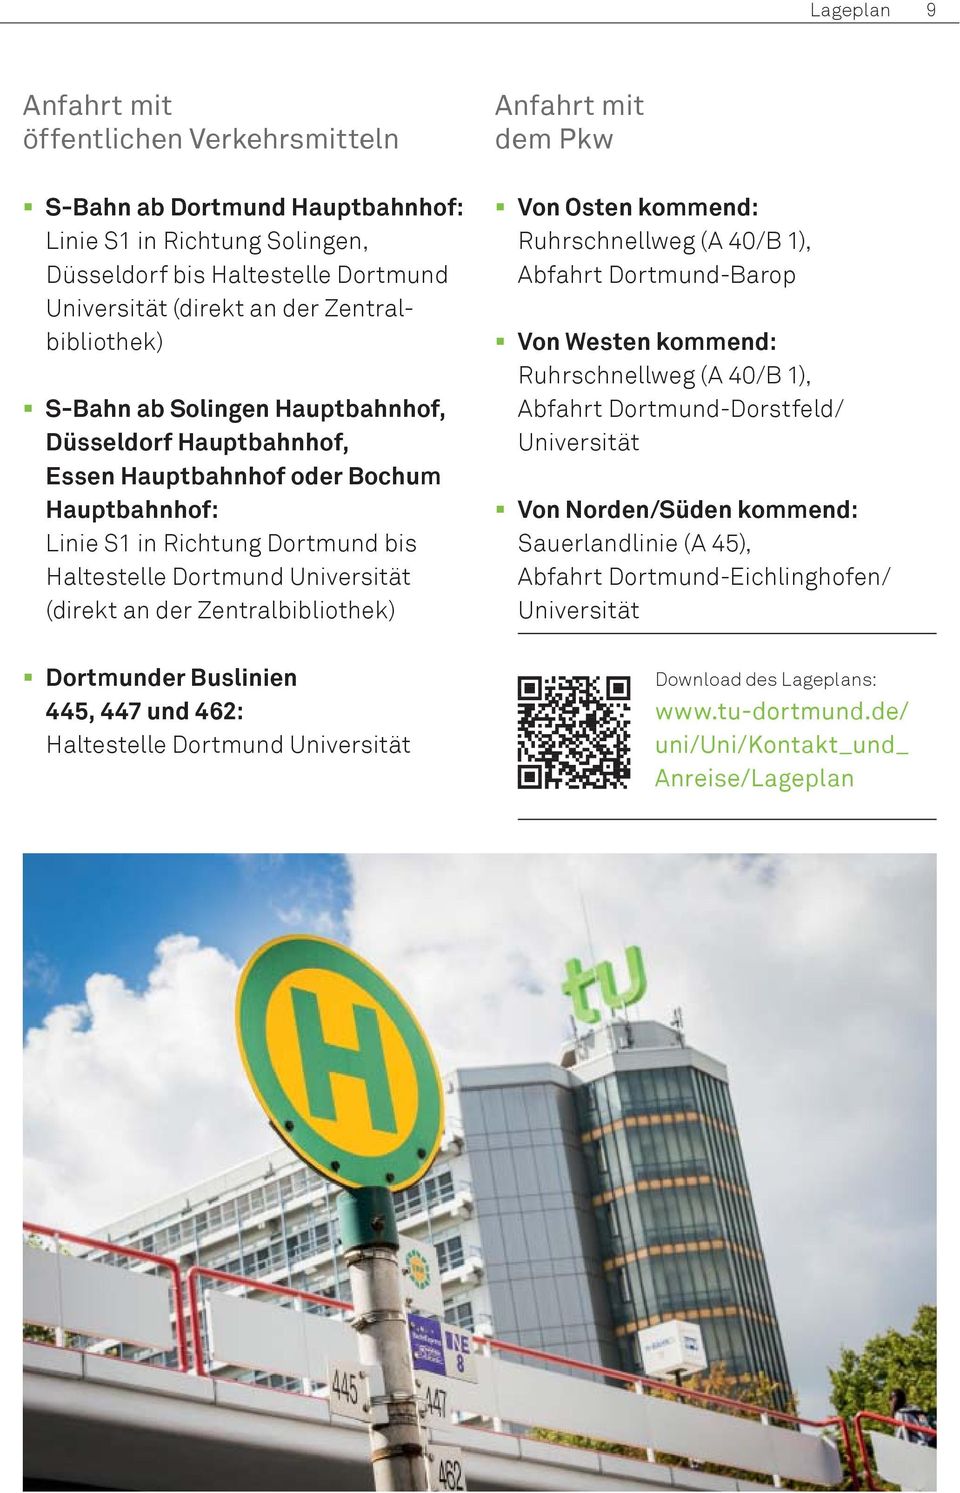 Zentralbibliothek) Dortmunder Buslinien 445, 447 und 462: Haltestelle Dortmund Universität Anfahrt mit dem Pkw Von Osten kommend: Ruhrschnellweg (A 40/B 1), Abfahrt Dortmund-Barop Von Westen kommend: